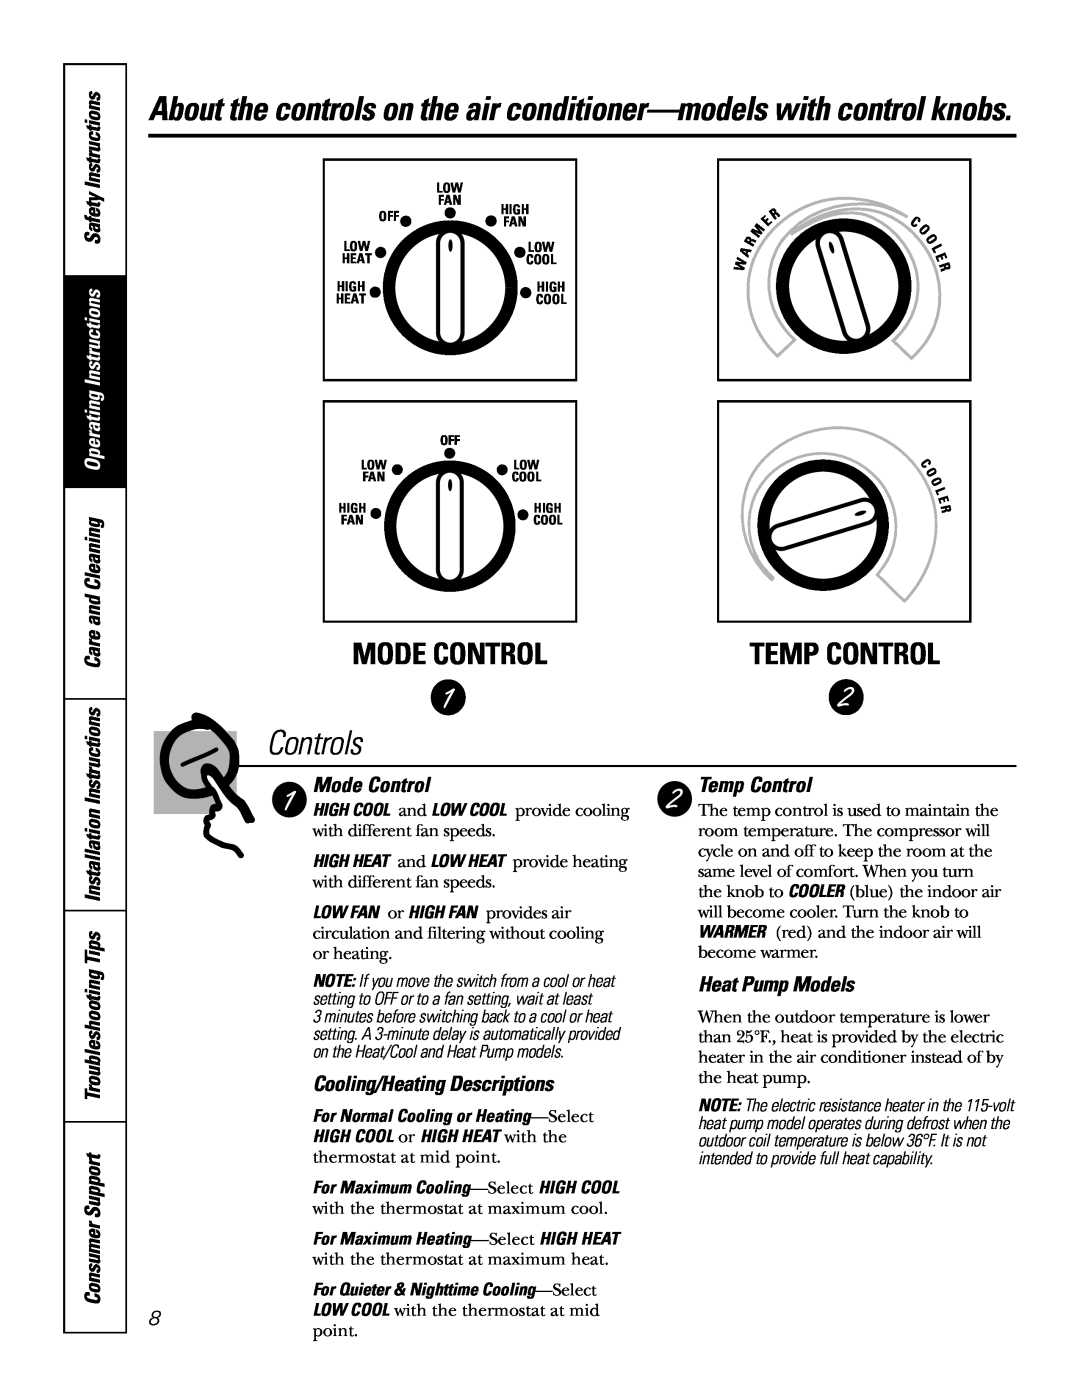 GE LCB AJCQ 08 Mode Control, Controls, Temp Control, Cooling/Heating Descriptions, Heat Pump Models, E R C O, High 